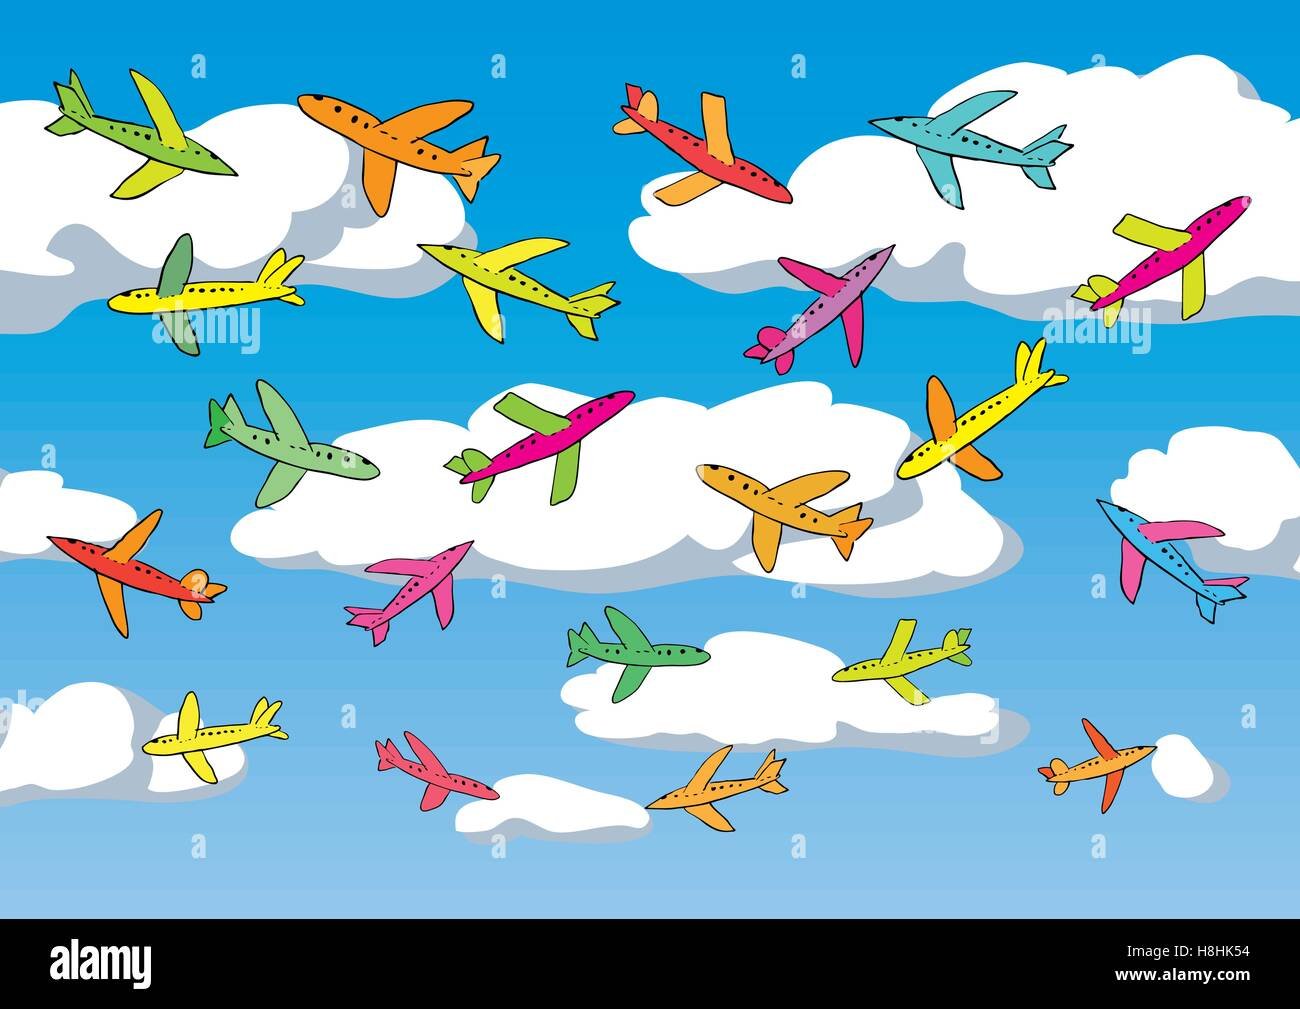 Много разноцветных самолётиков